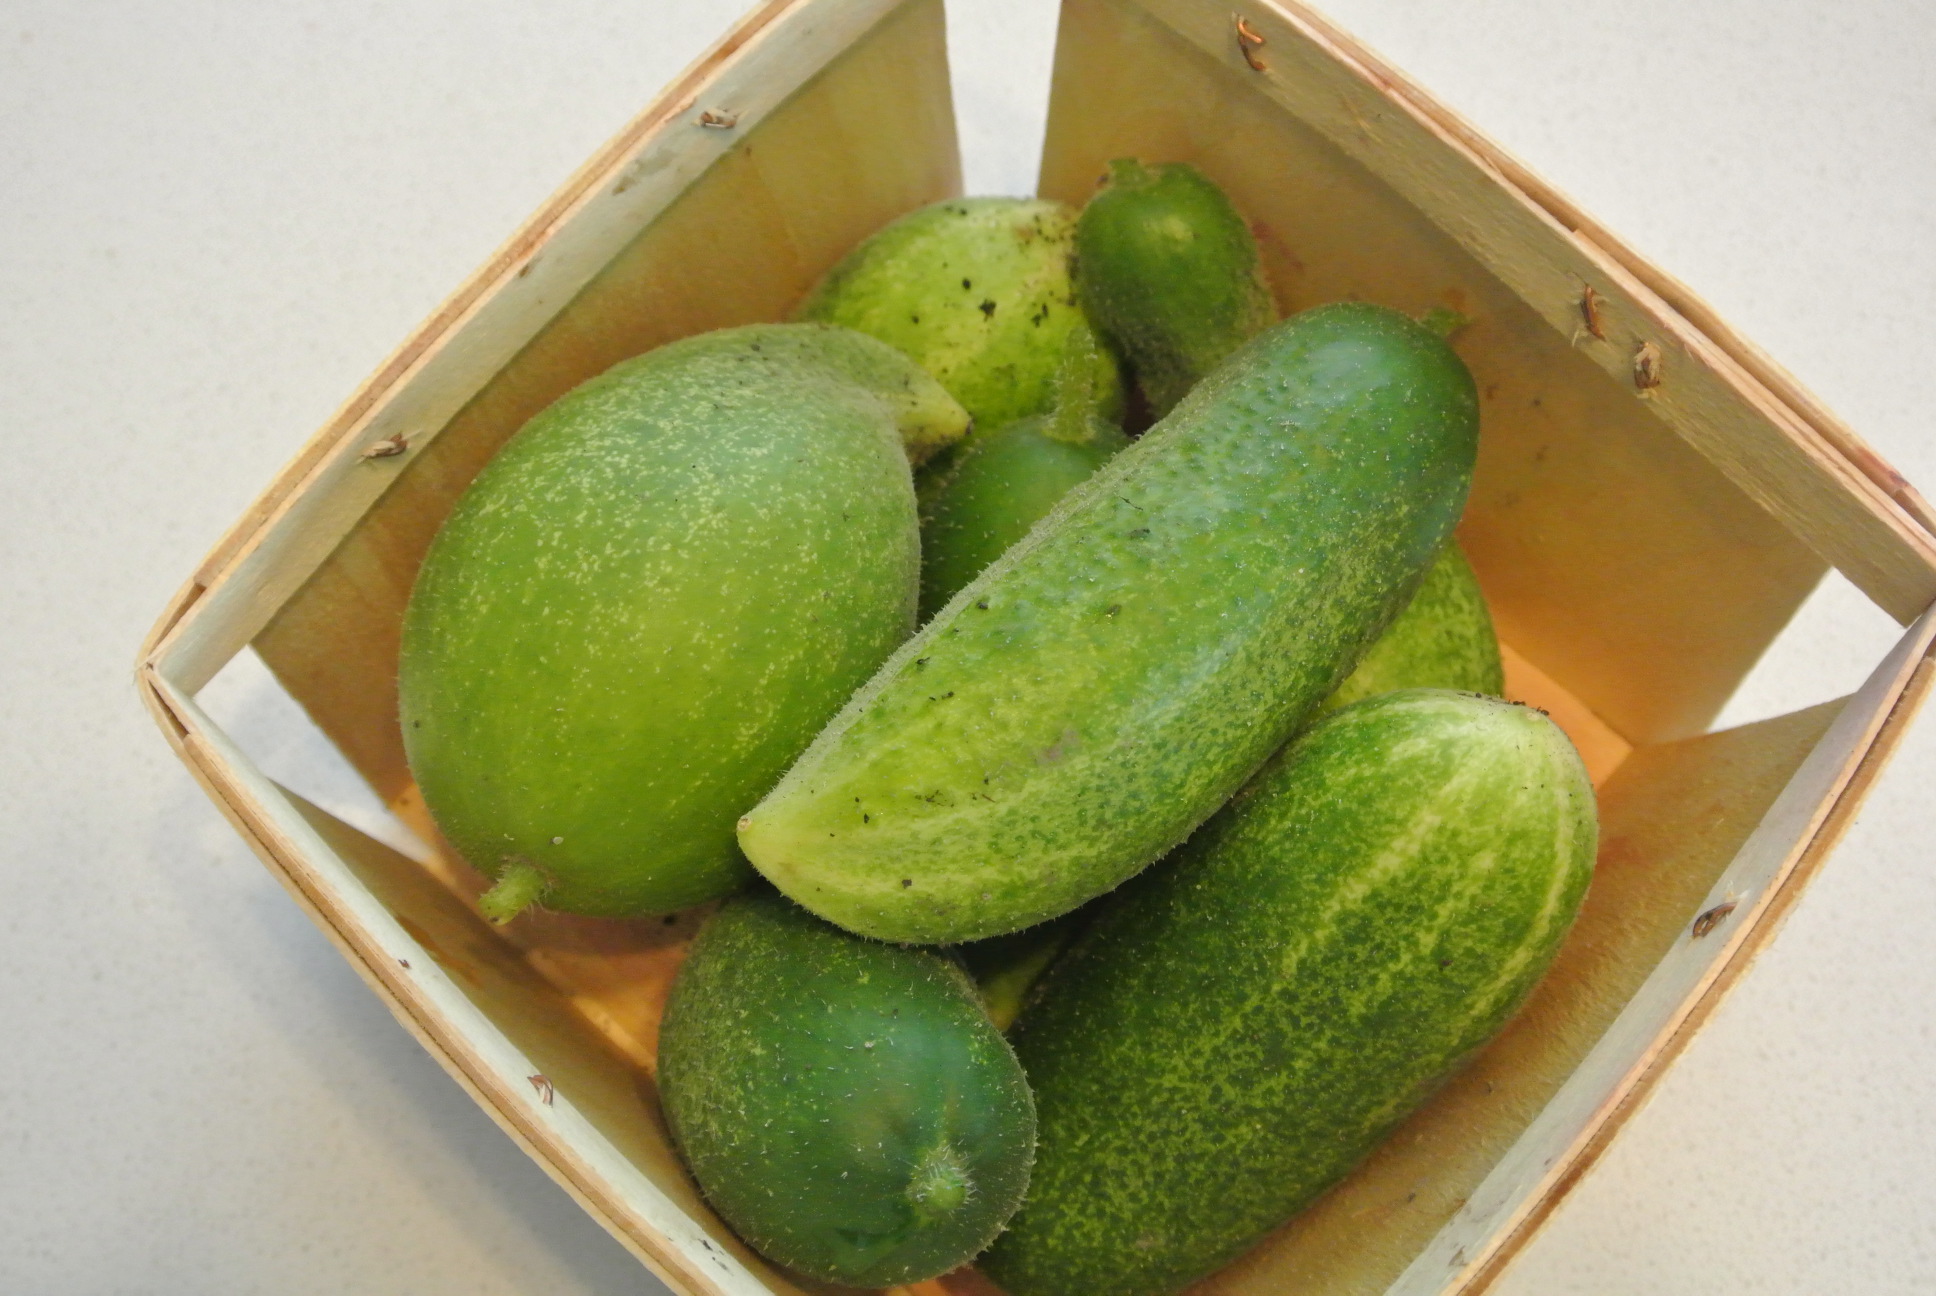 Parisian Pickling Cucumbers